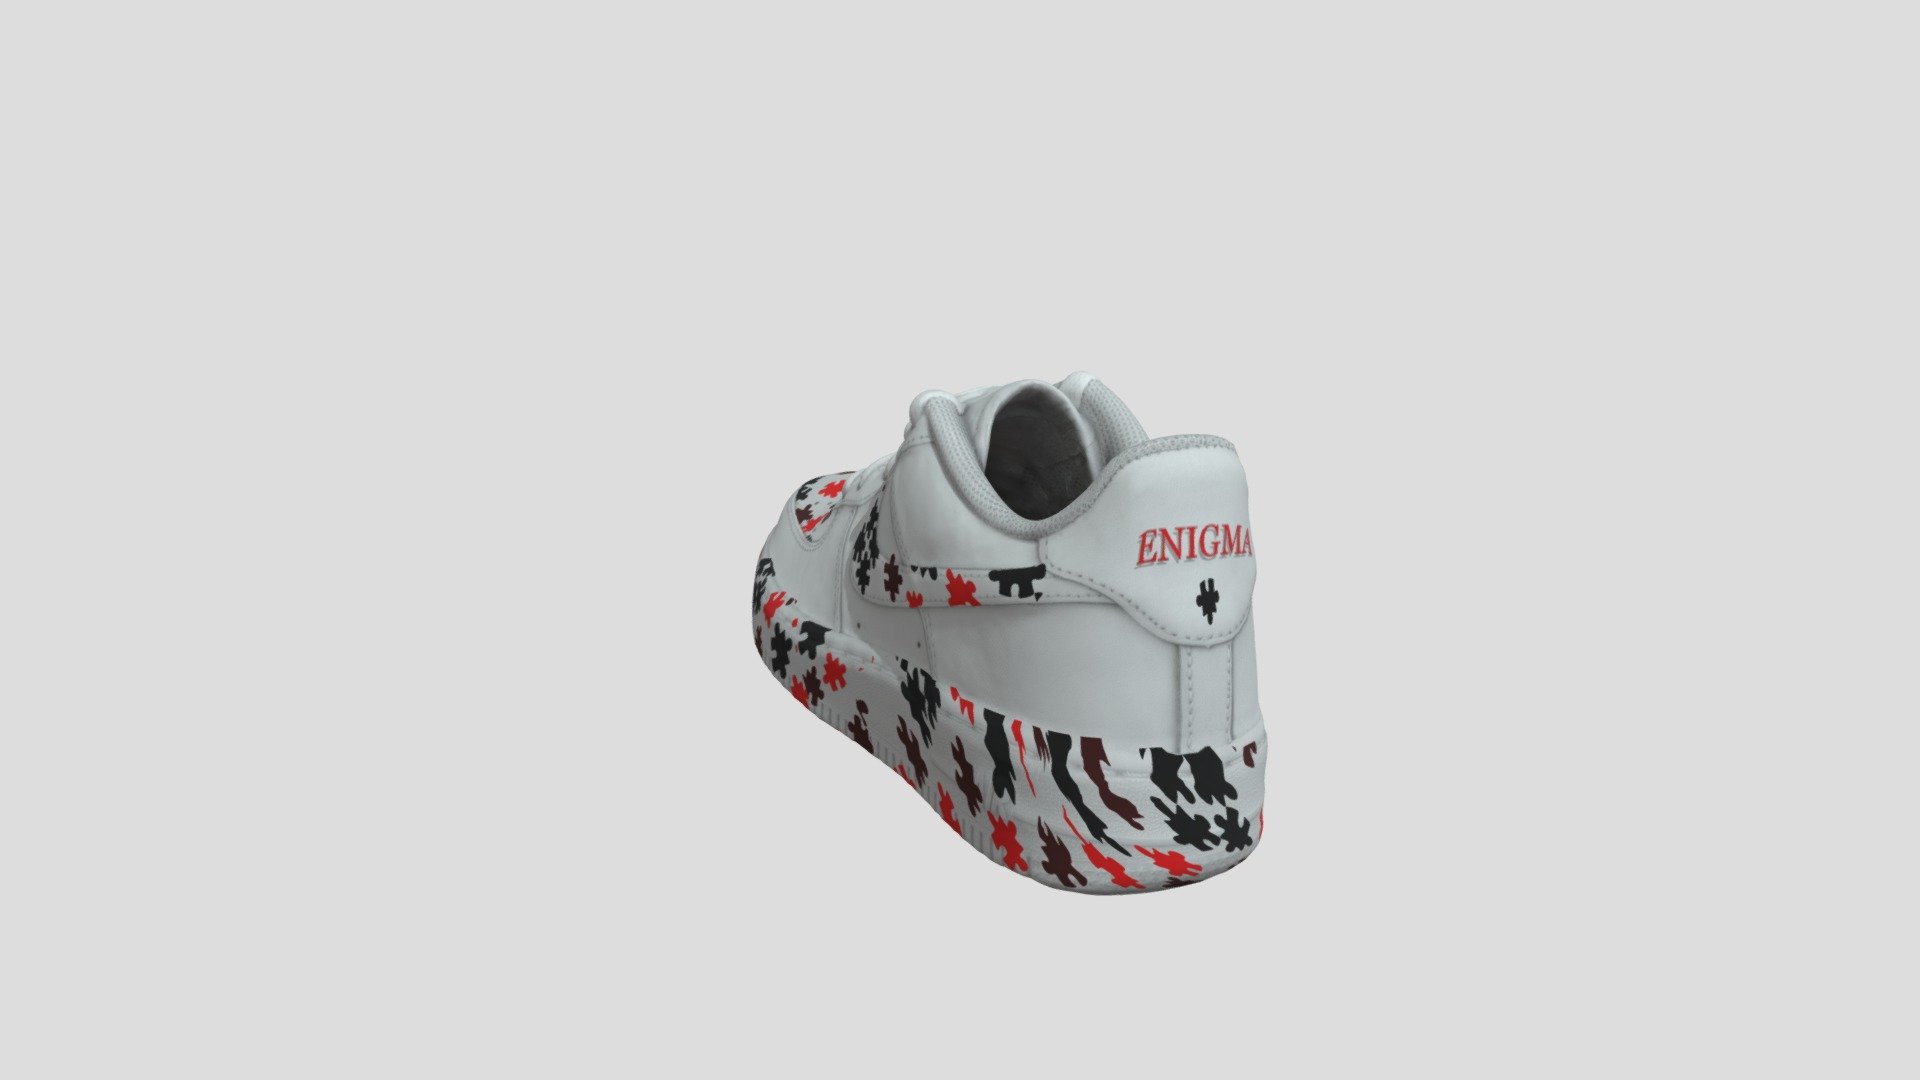 Enigma-Nike AF1 Collab